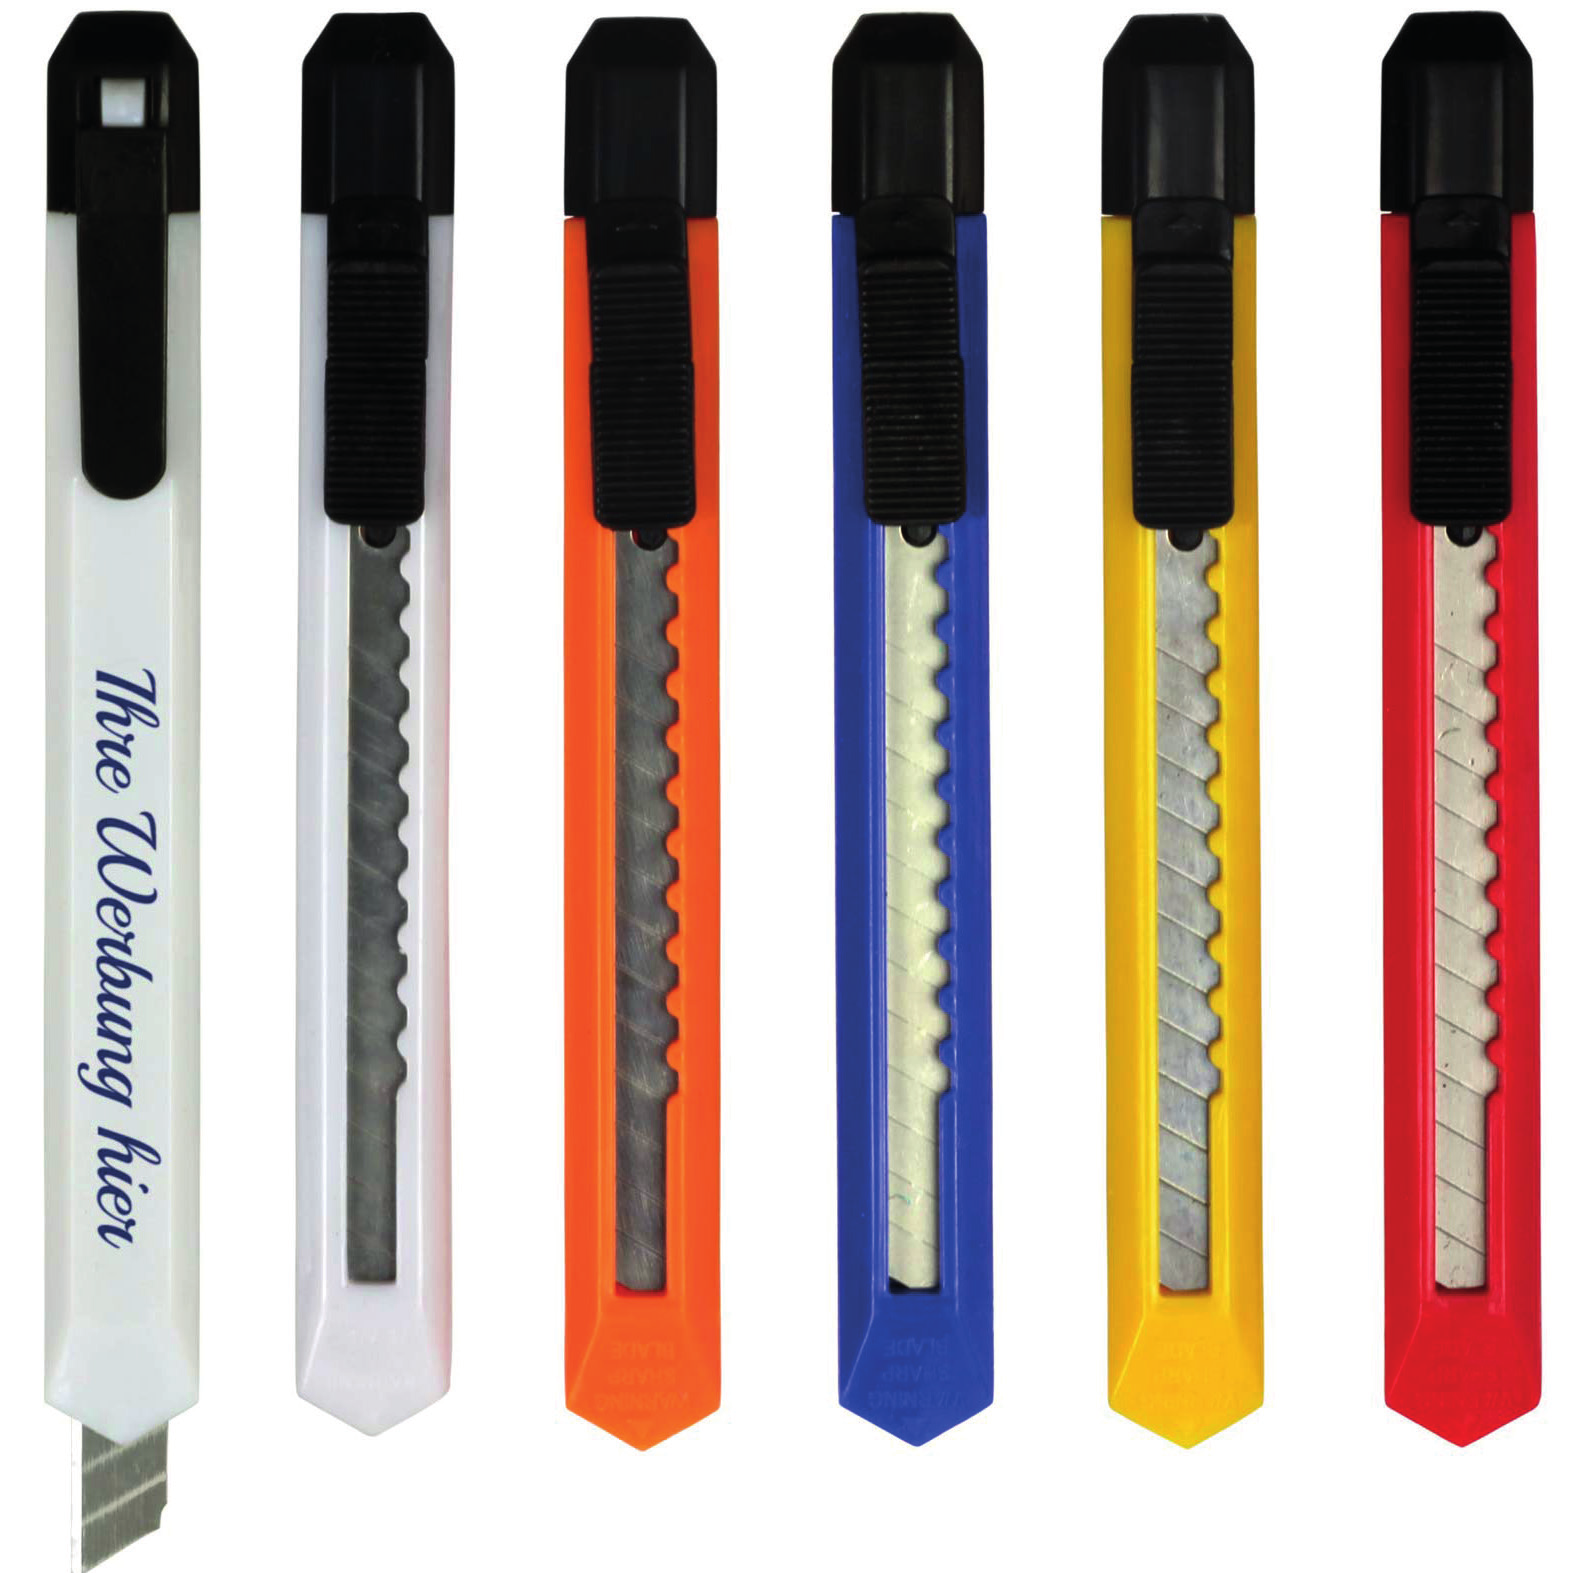 Die Papiermesser sind in 5 Farben lieferbar und werden einseitig 1-farbig bedruckt.